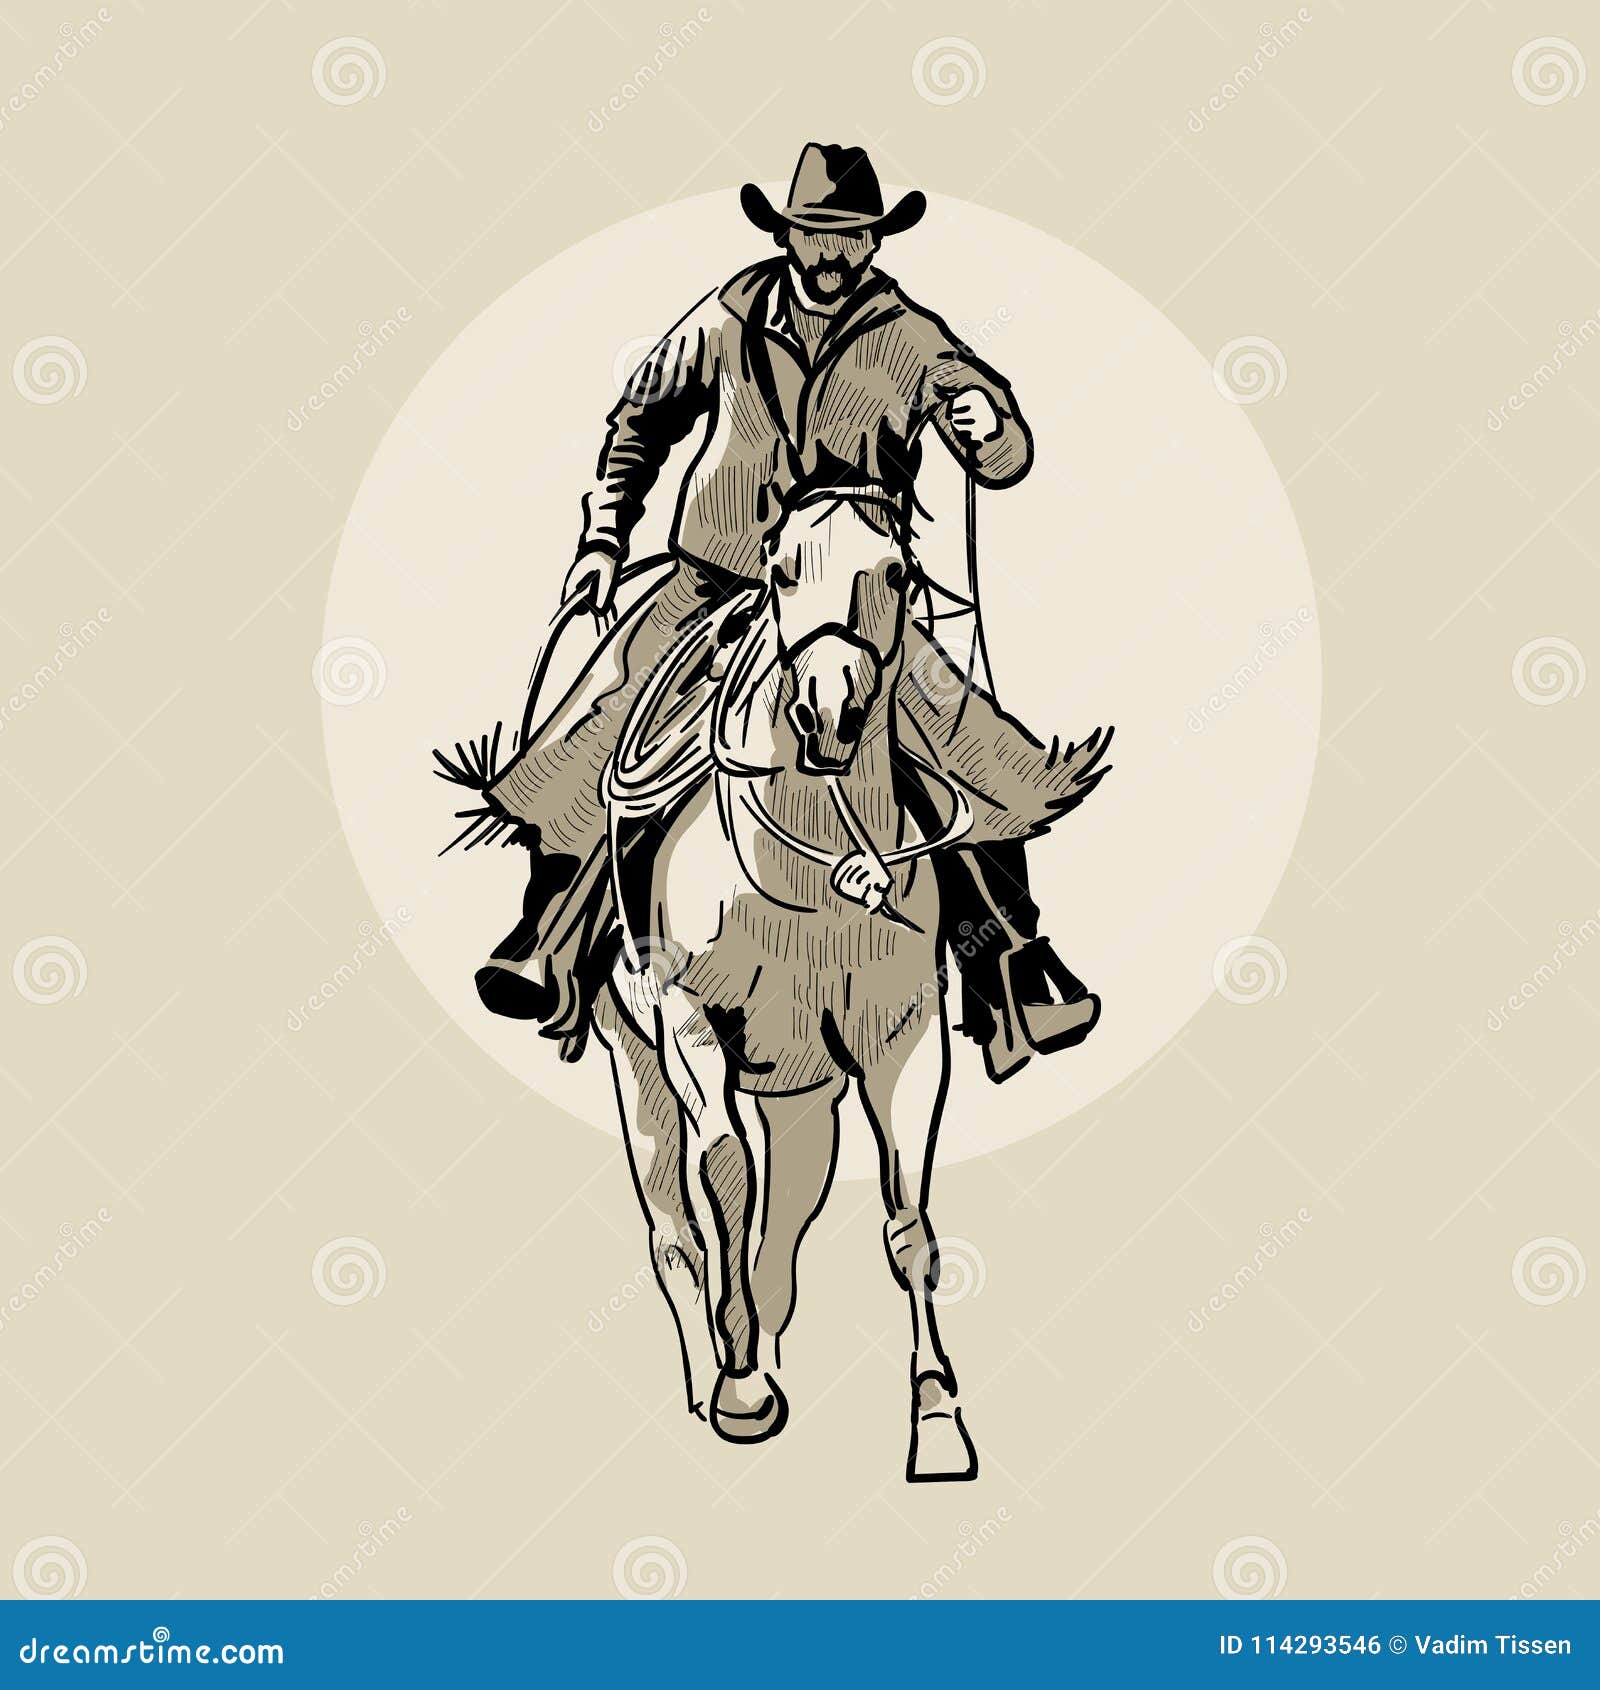 Desenho de Vaqueiro a cavalo pintado e colorido por Usuário não registrado  o dia 28 de Julho do 2010